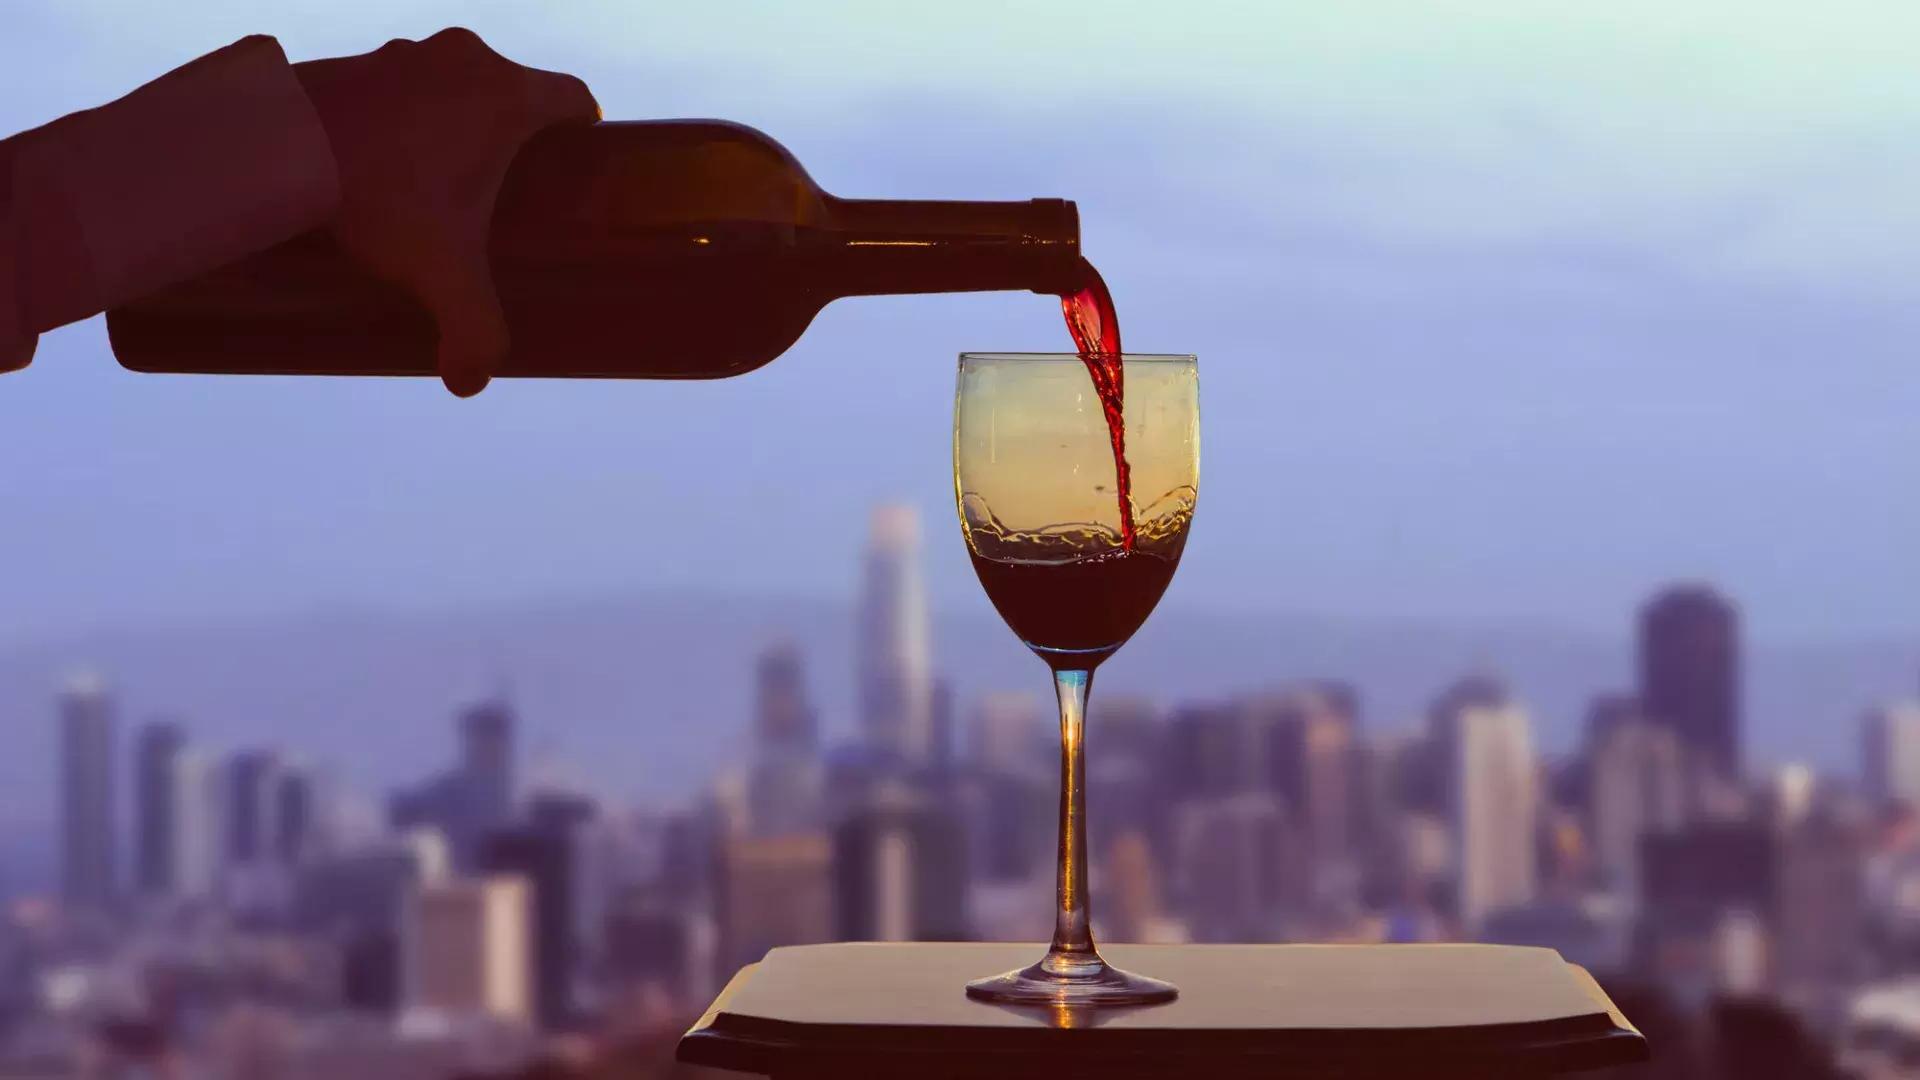 窓の外にはサンフランシスコのスカイラインが見える中、グラスに赤ワインが注がれています。